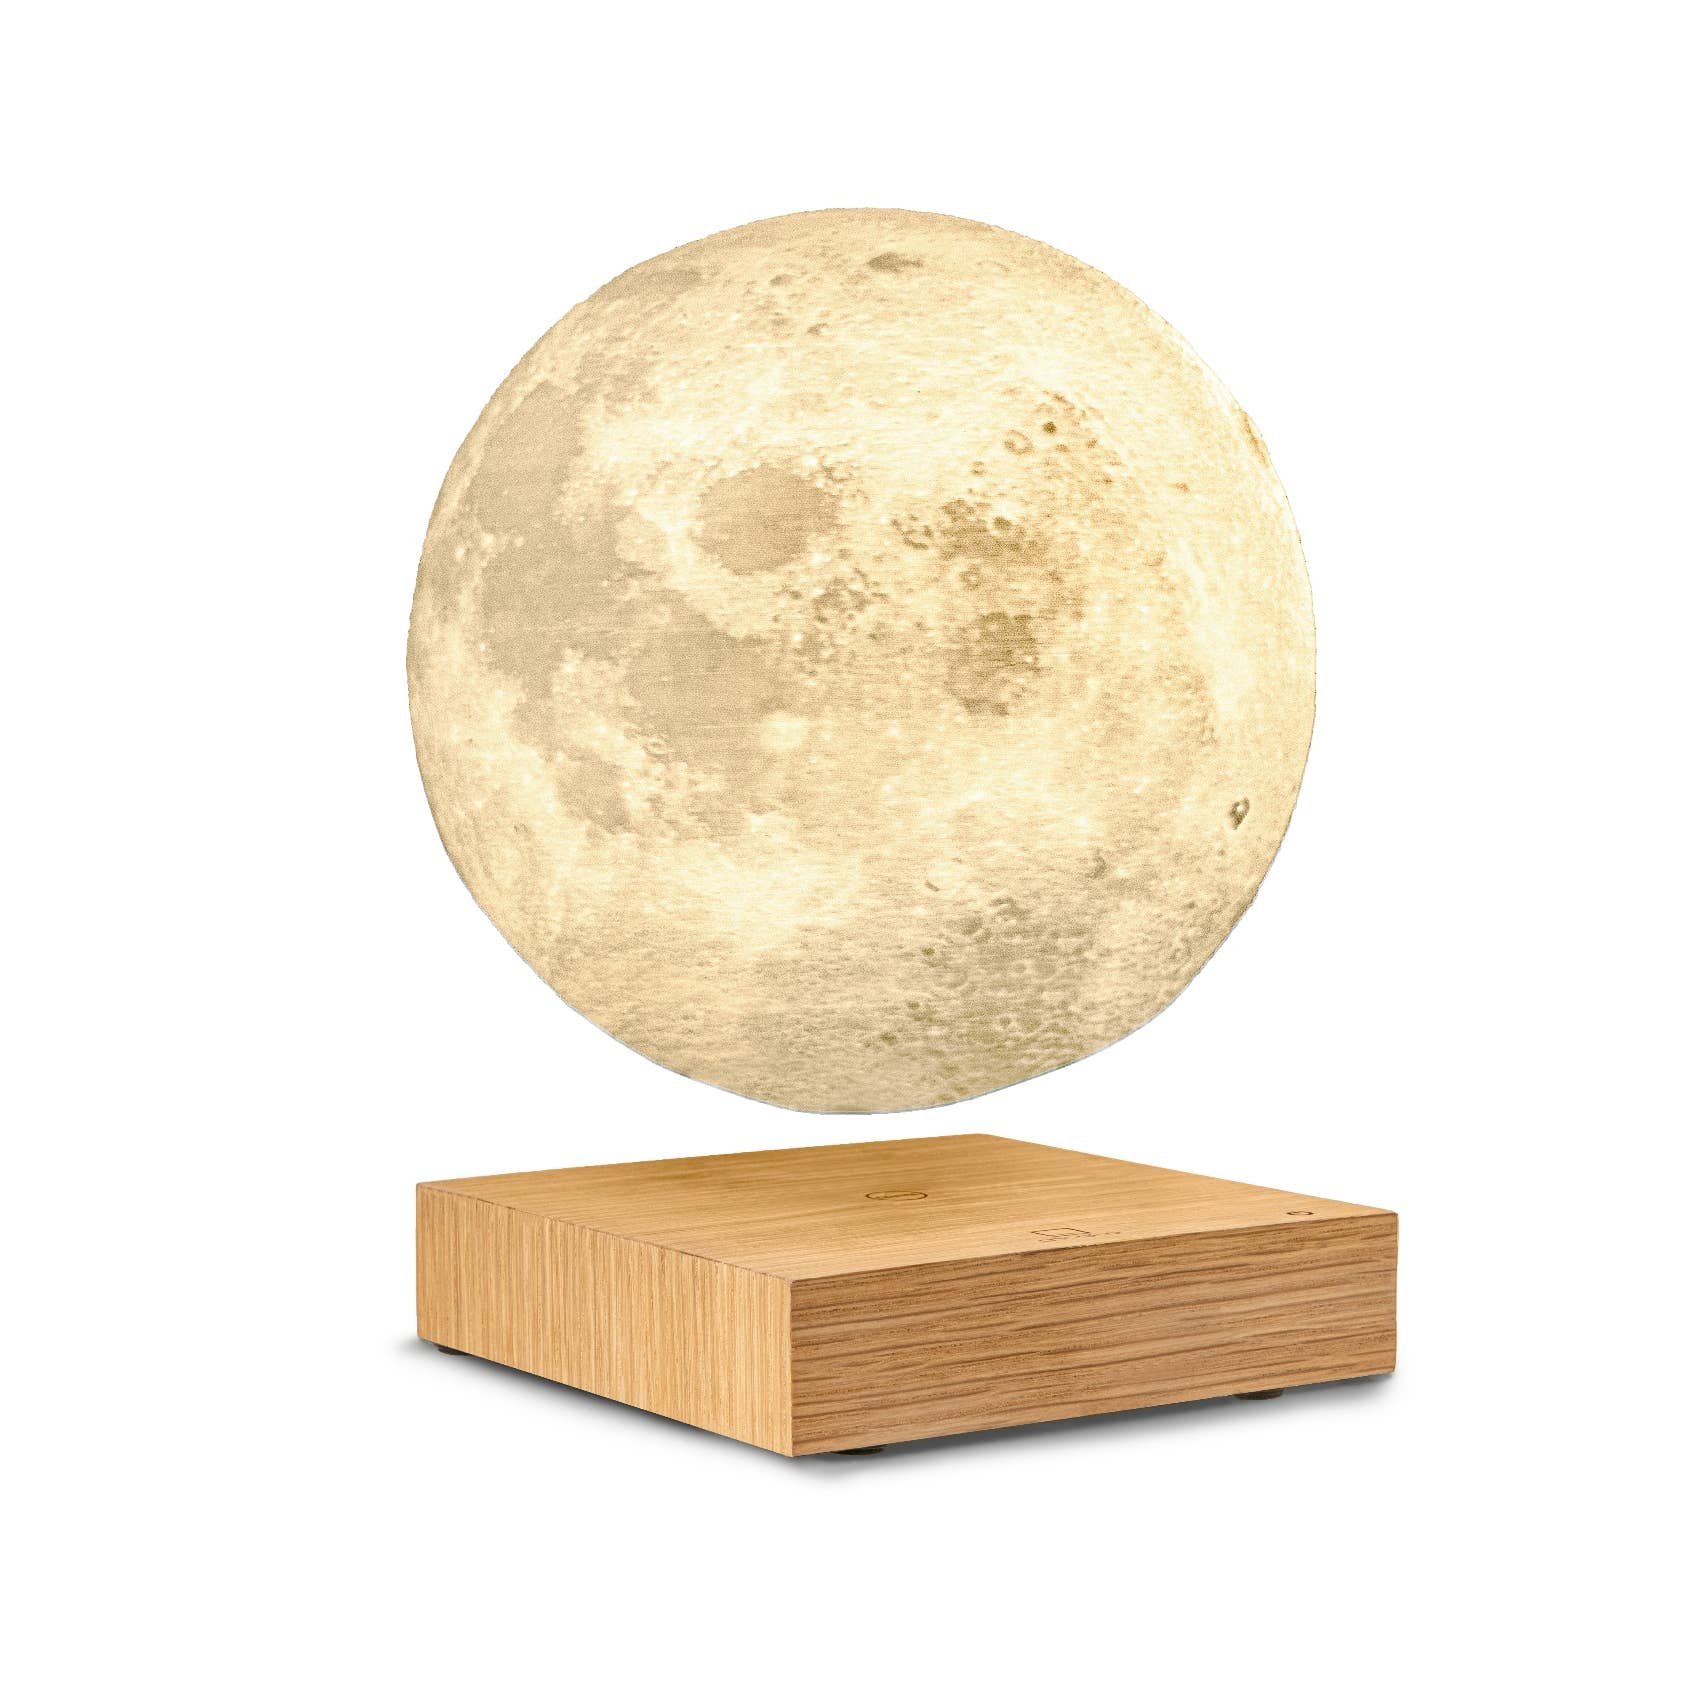 Coöperatie linnen afgunst Moon Lamp in White Ash from Gingko